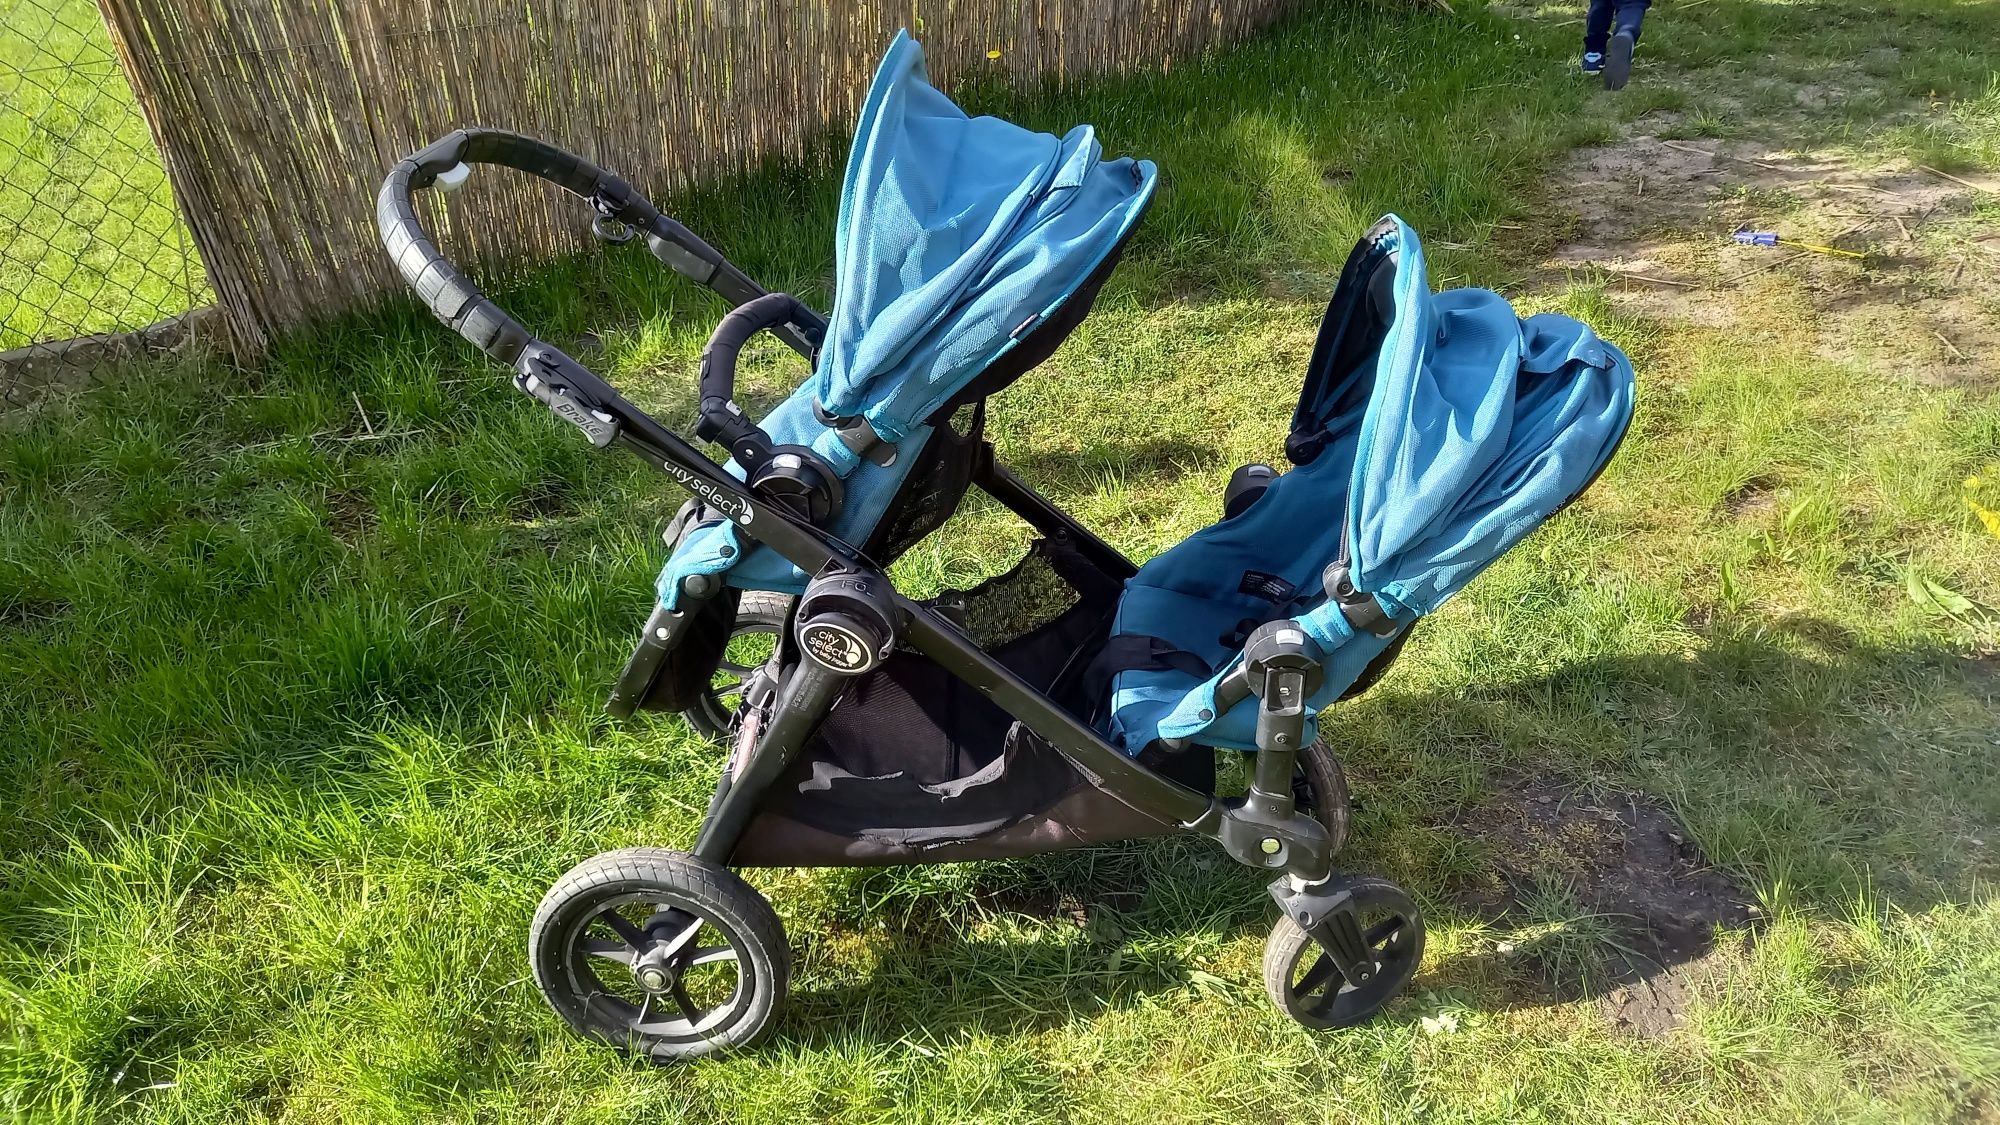 Wózek baby jogger city select dla bliźniaków lub rok po roku